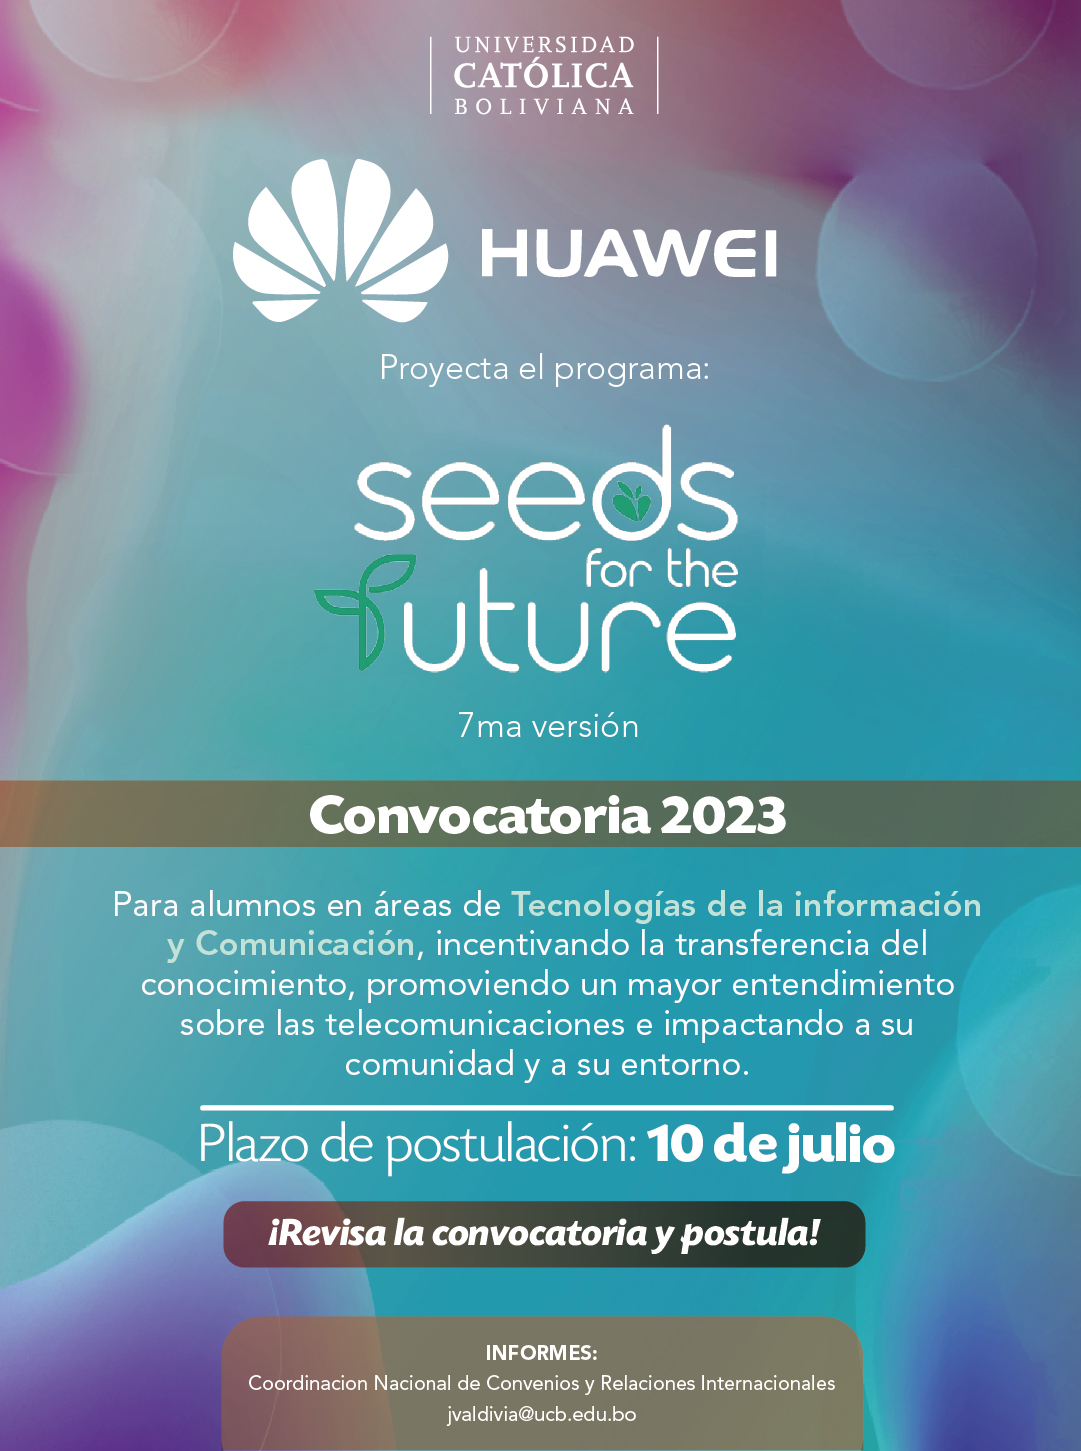 Huawei abre la Convocatoria 2023 del Programa “SEEDS FOR THE FUTURE” 7ma versión en nuestro país.